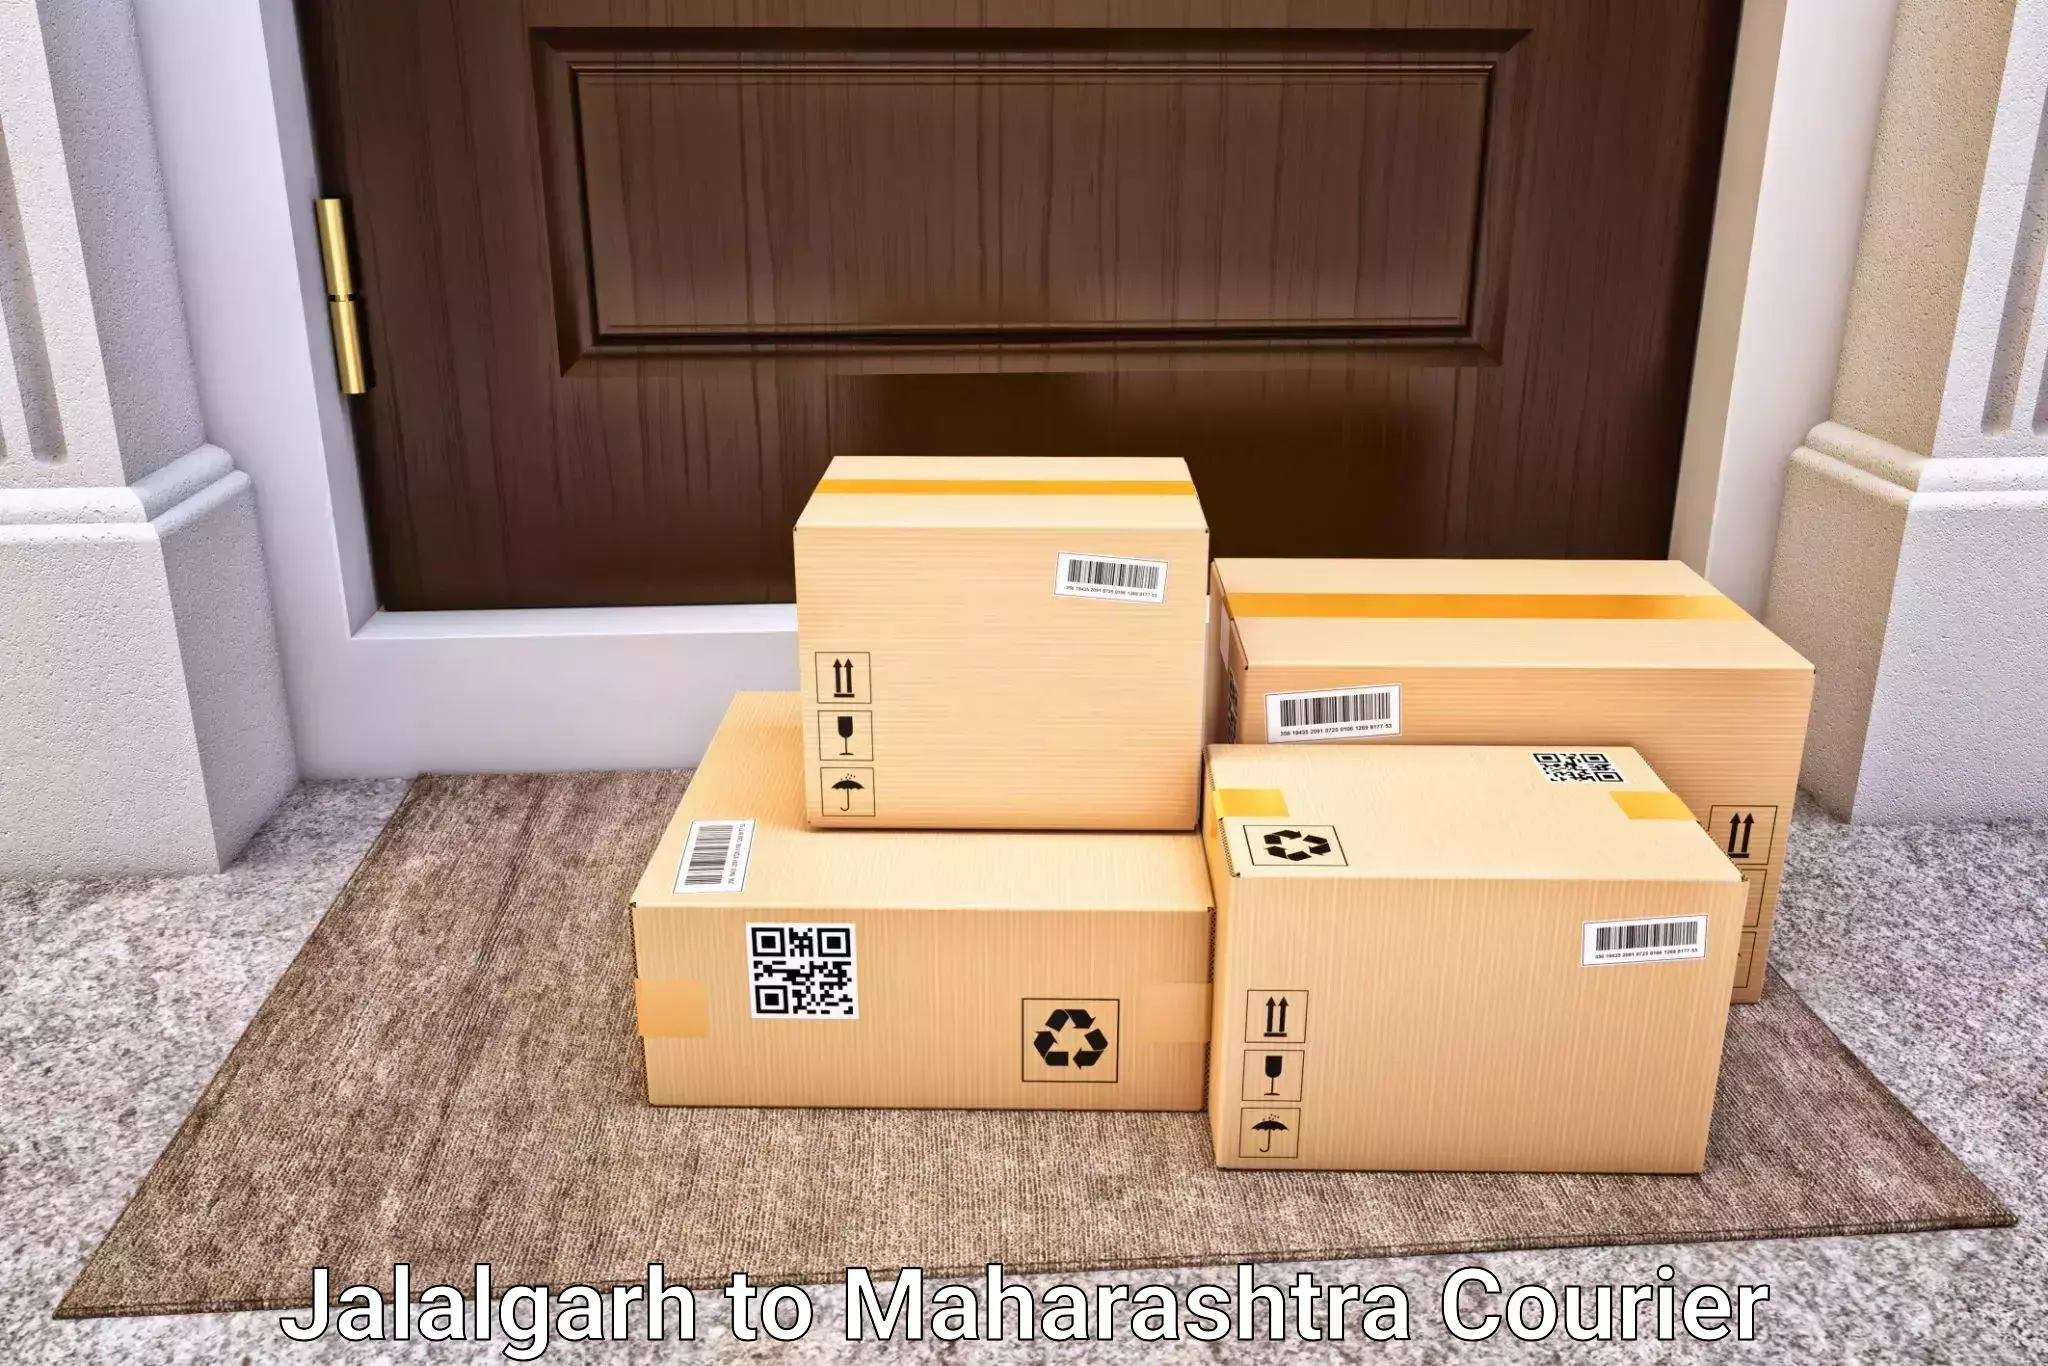 Luggage transport consultancy Jalalgarh to Maharashtra